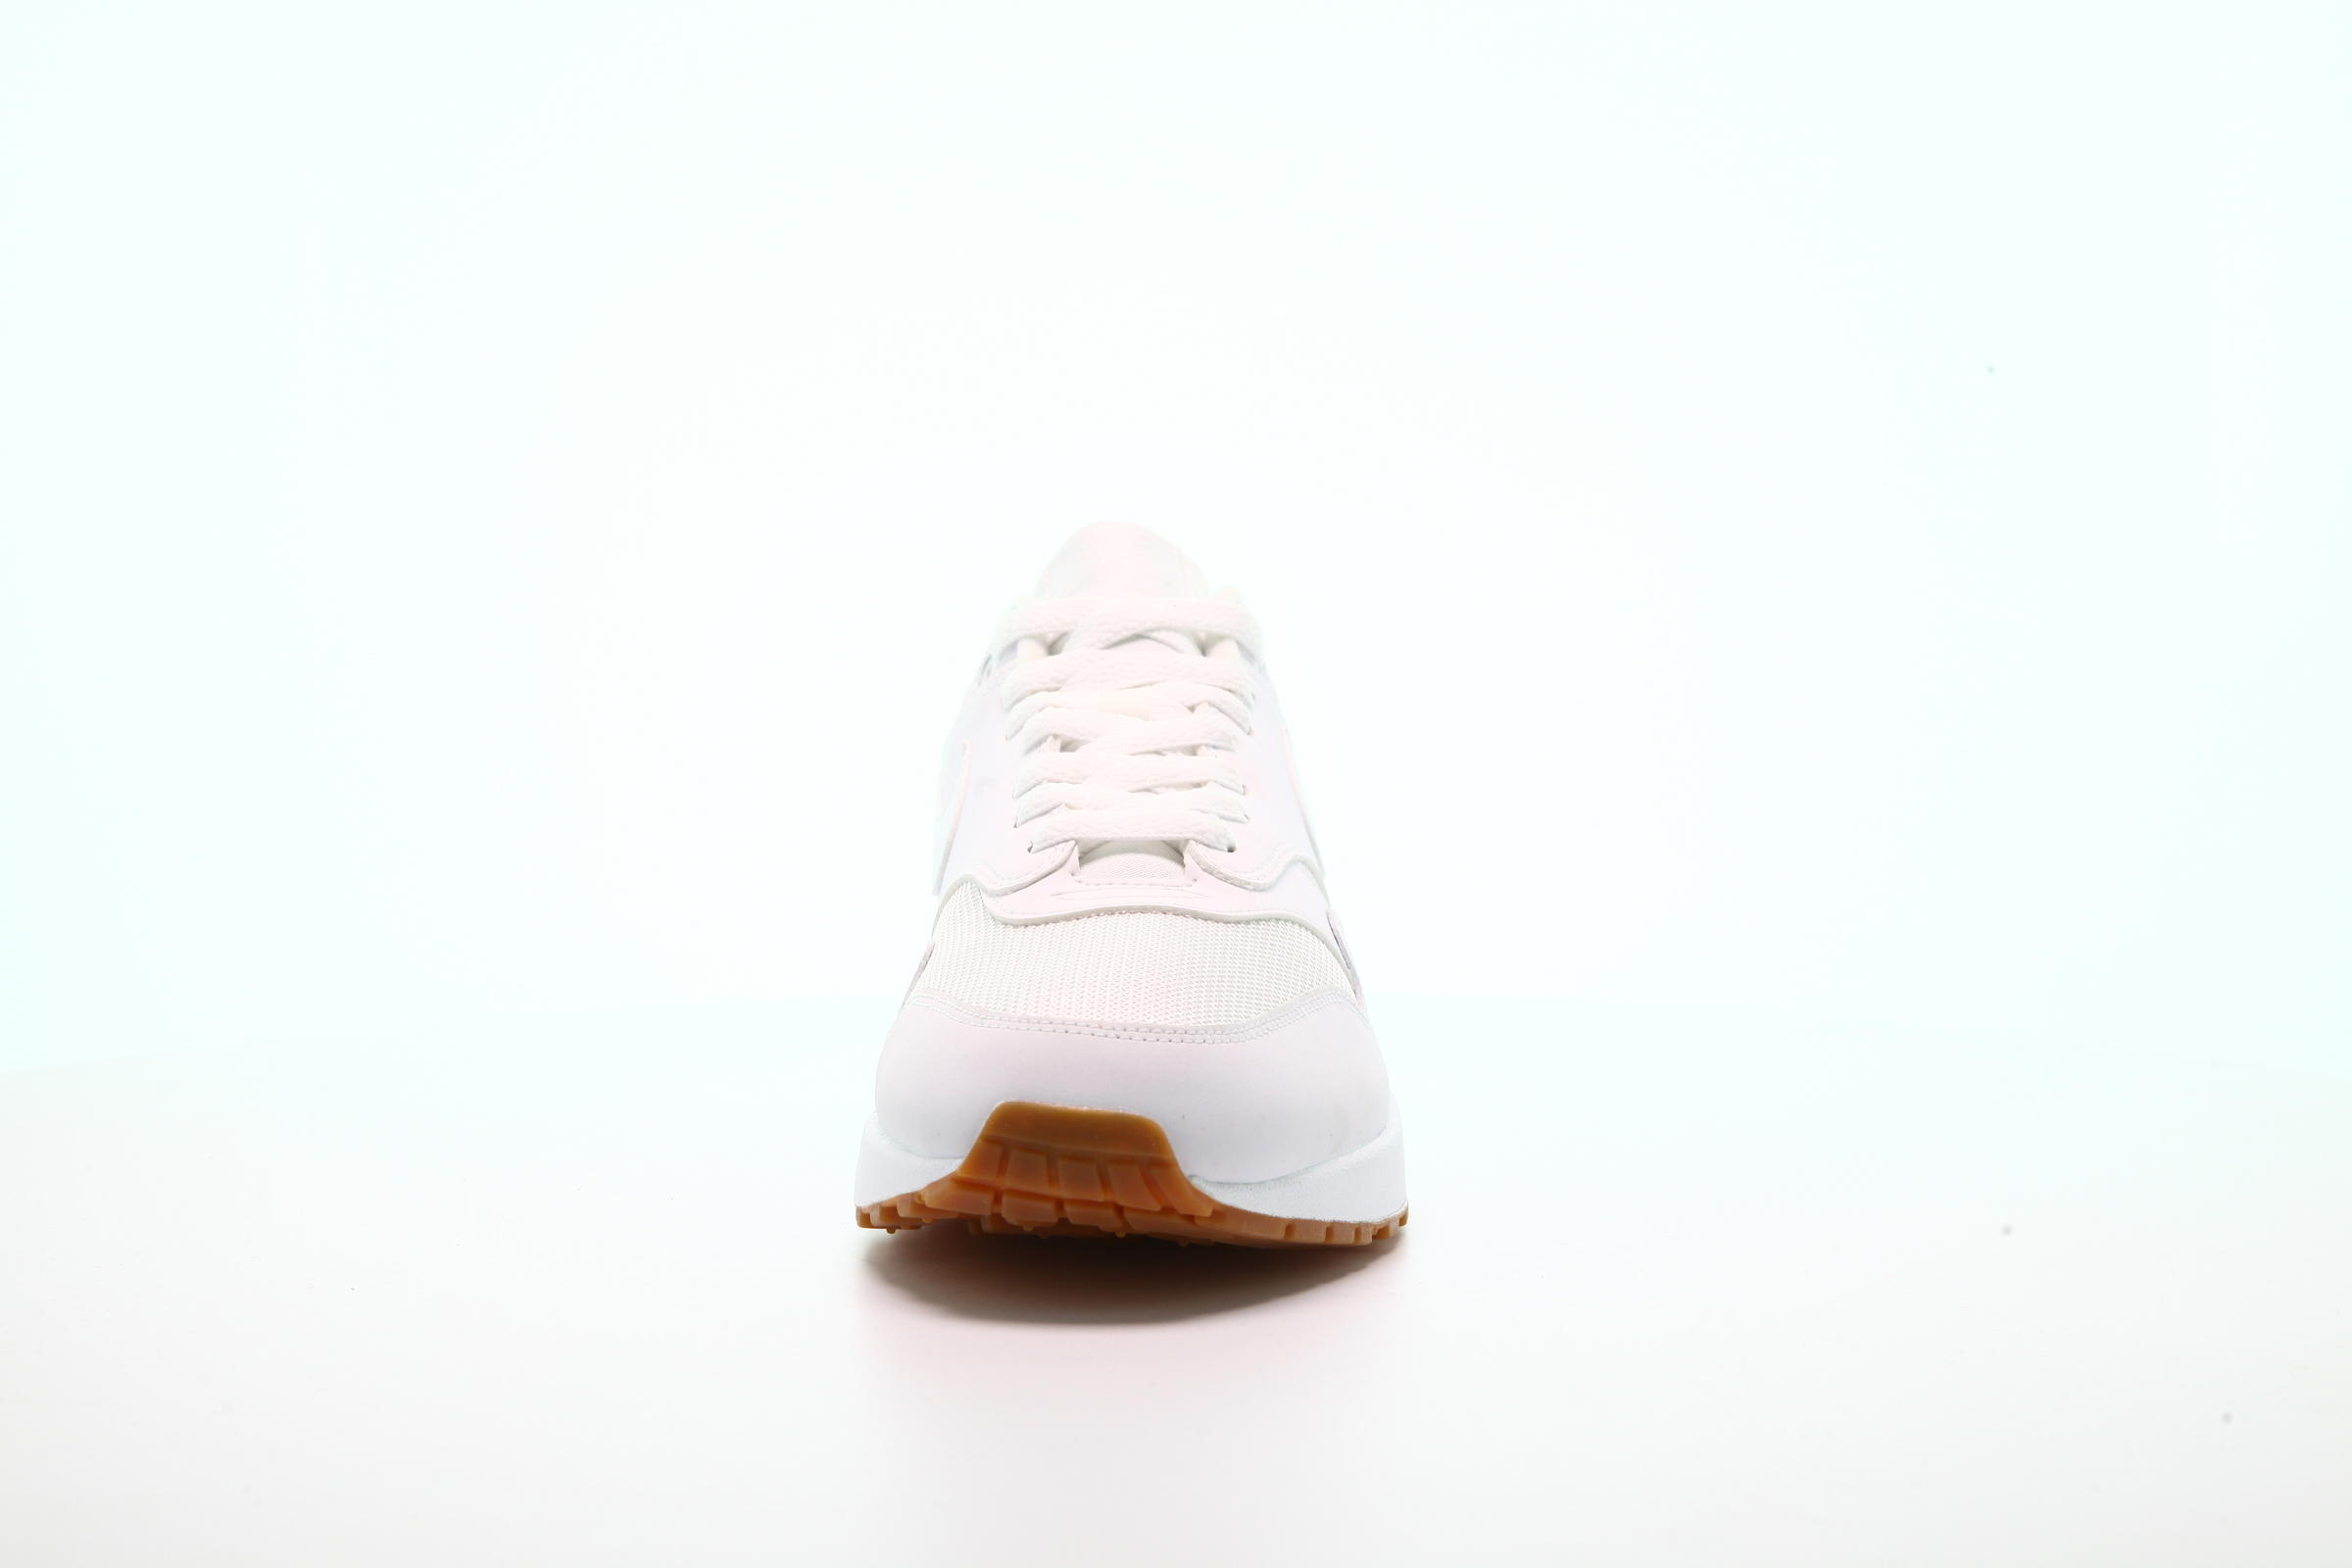 Nike Air Max 1 Gum Pack "White"